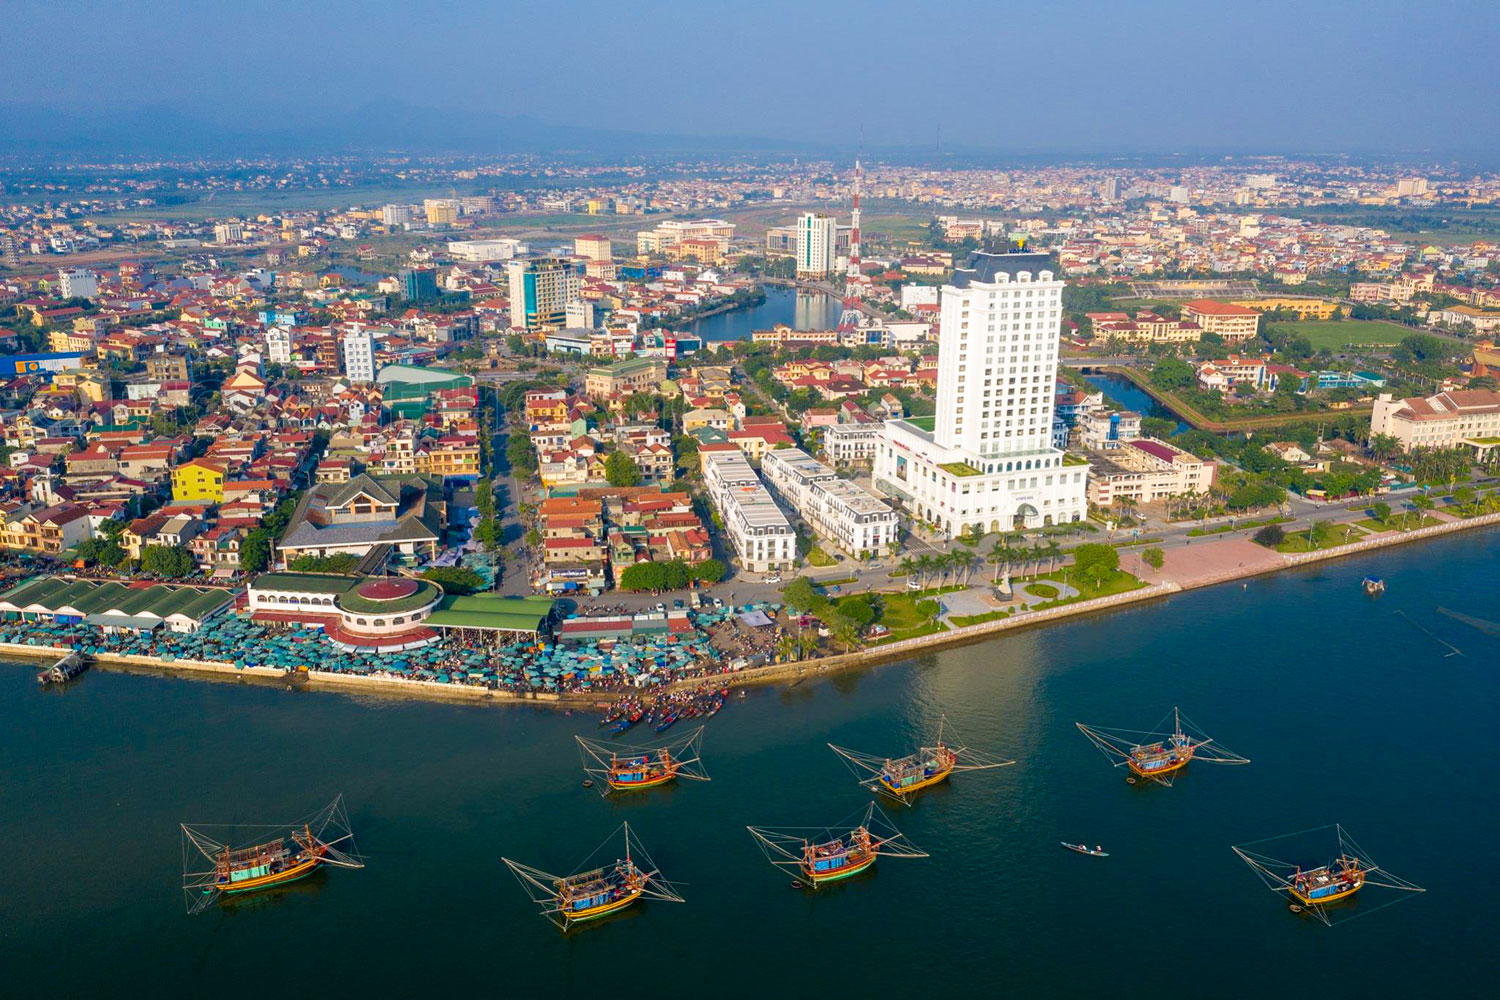 Khung cảnh thành phố Đồng Hới tươi đẹp từ trên cao.